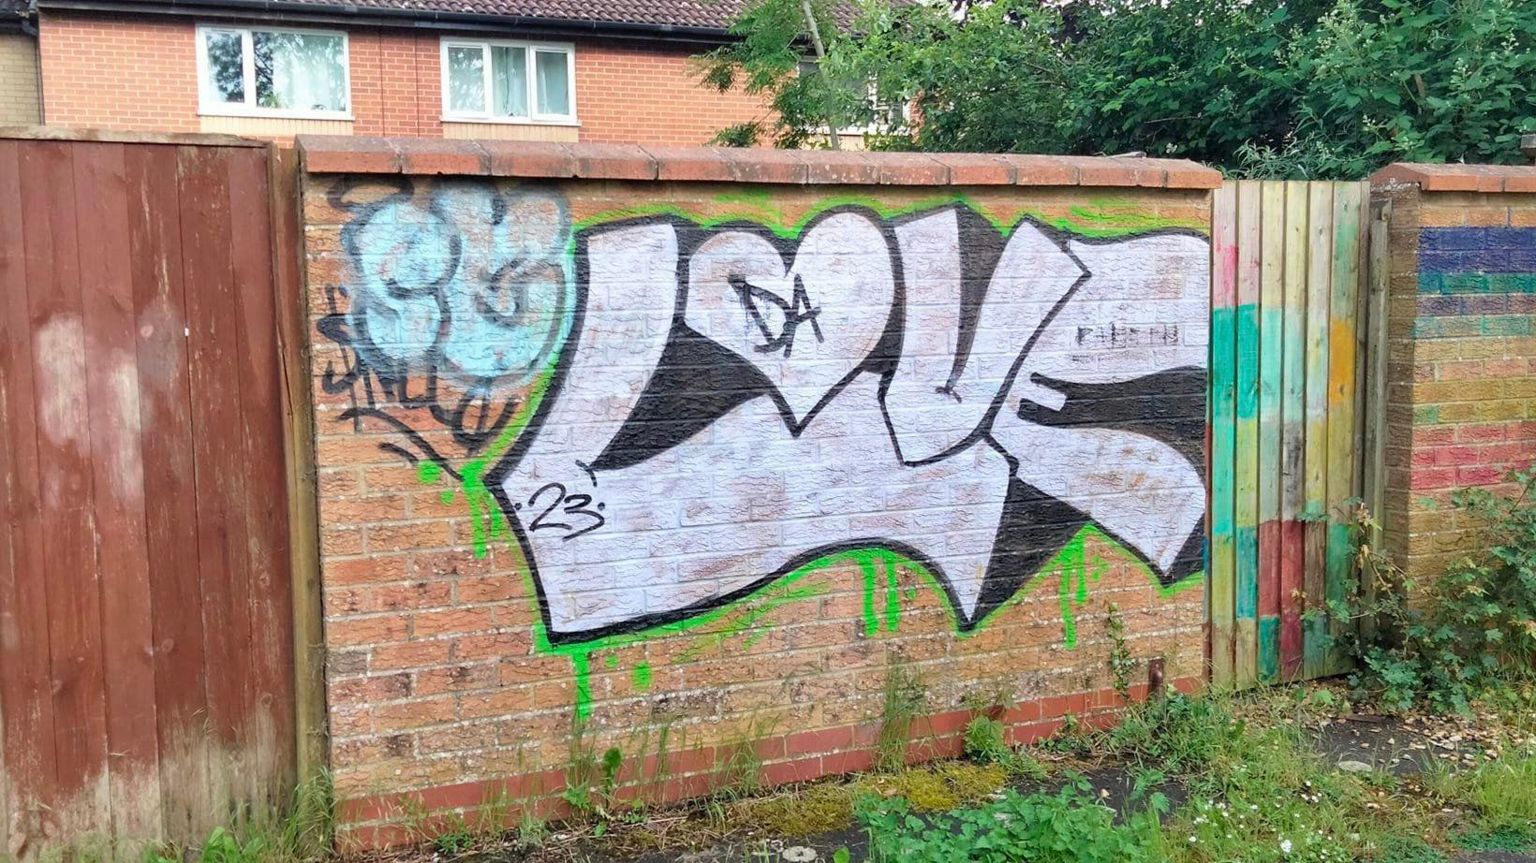 Graffiti on a outer brick wall